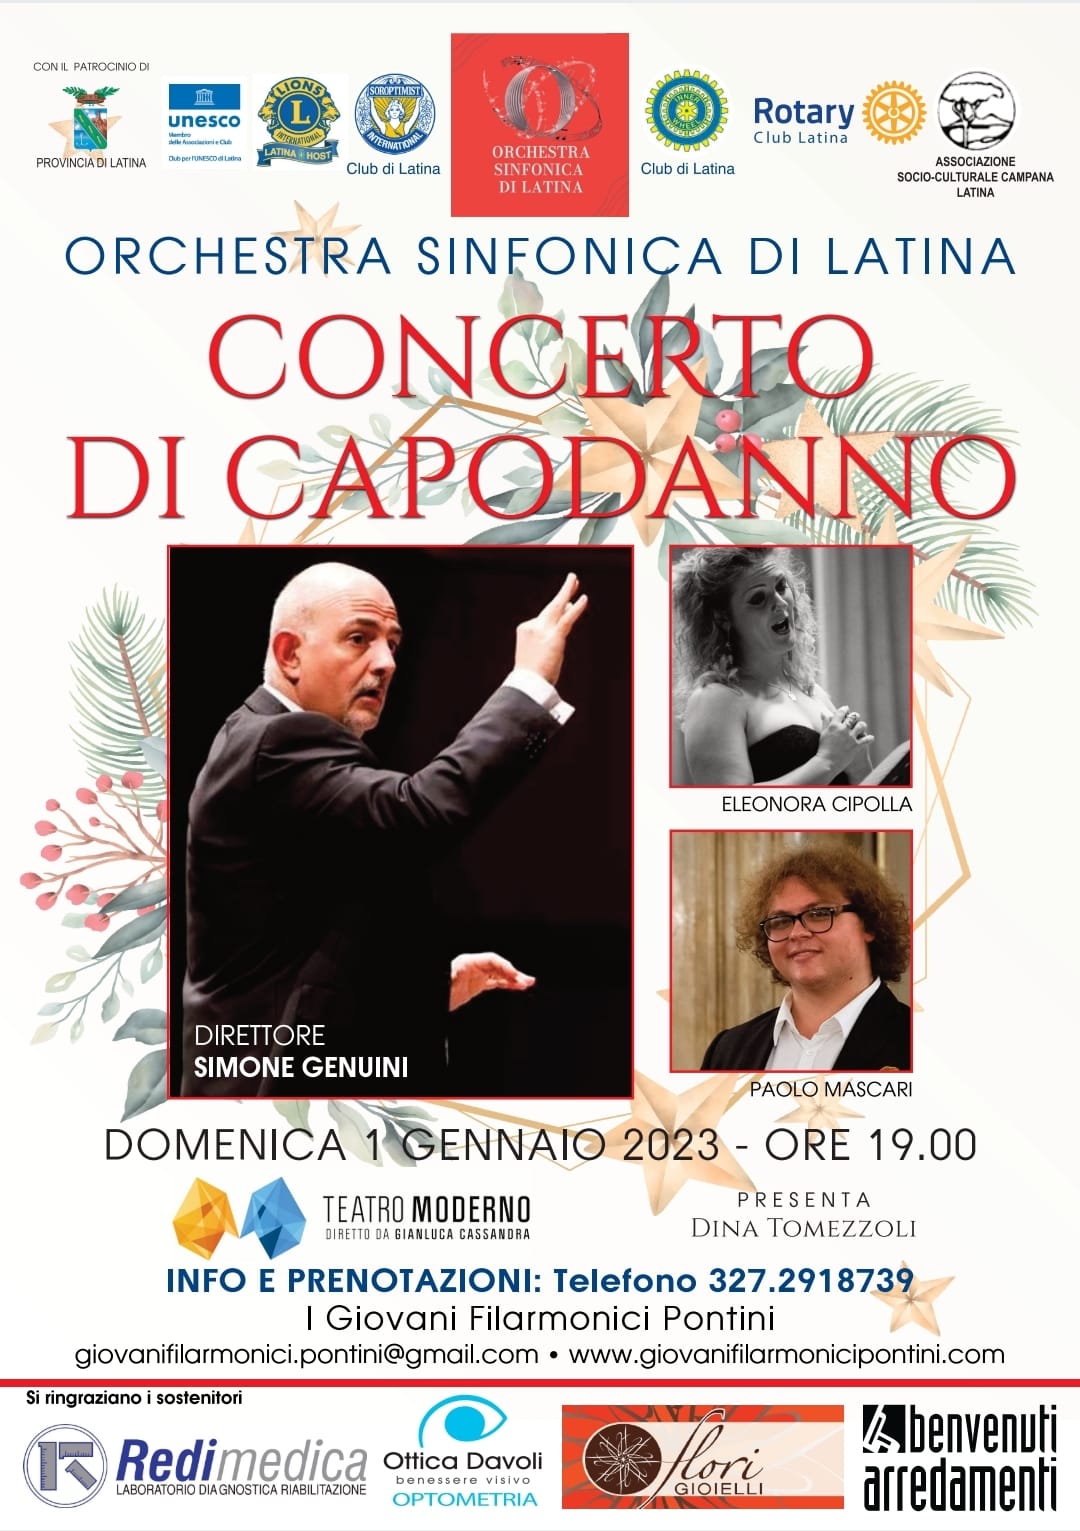 Capodanno con l’Orchestra Sinfonica  di Latina diretta dal M° Simone Genuini